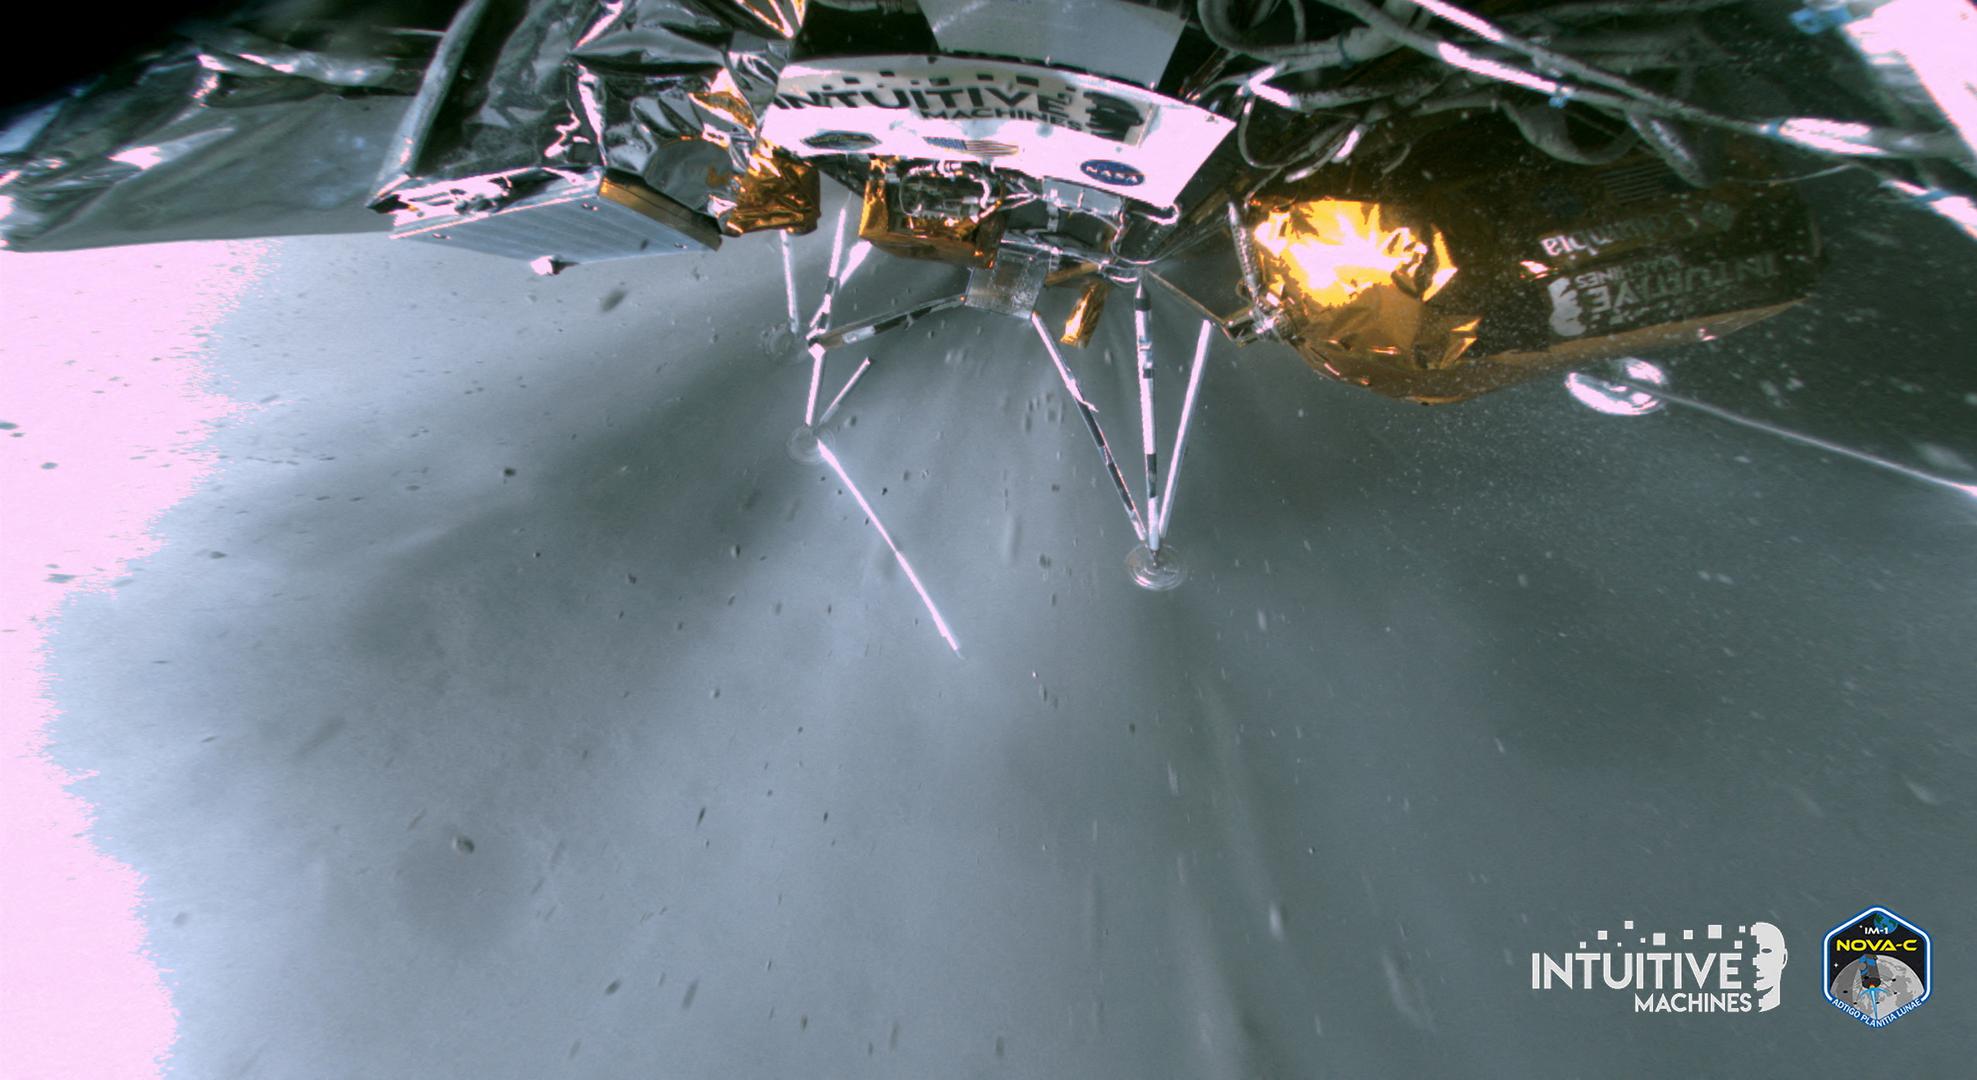 Objavljene su nove fotografije slijetanja na Mjesec svemirske letjelice Odisej. Fotografije su preuzete zajedno s ogromnom količinom podataka. Intuitive Machines, američka tvrtka koja stoji iza misije, rekla je da će sada biti moguće rekonstruirati slijetanje kako bi se razumjelo kako se Odisej zaustavio na boku.

